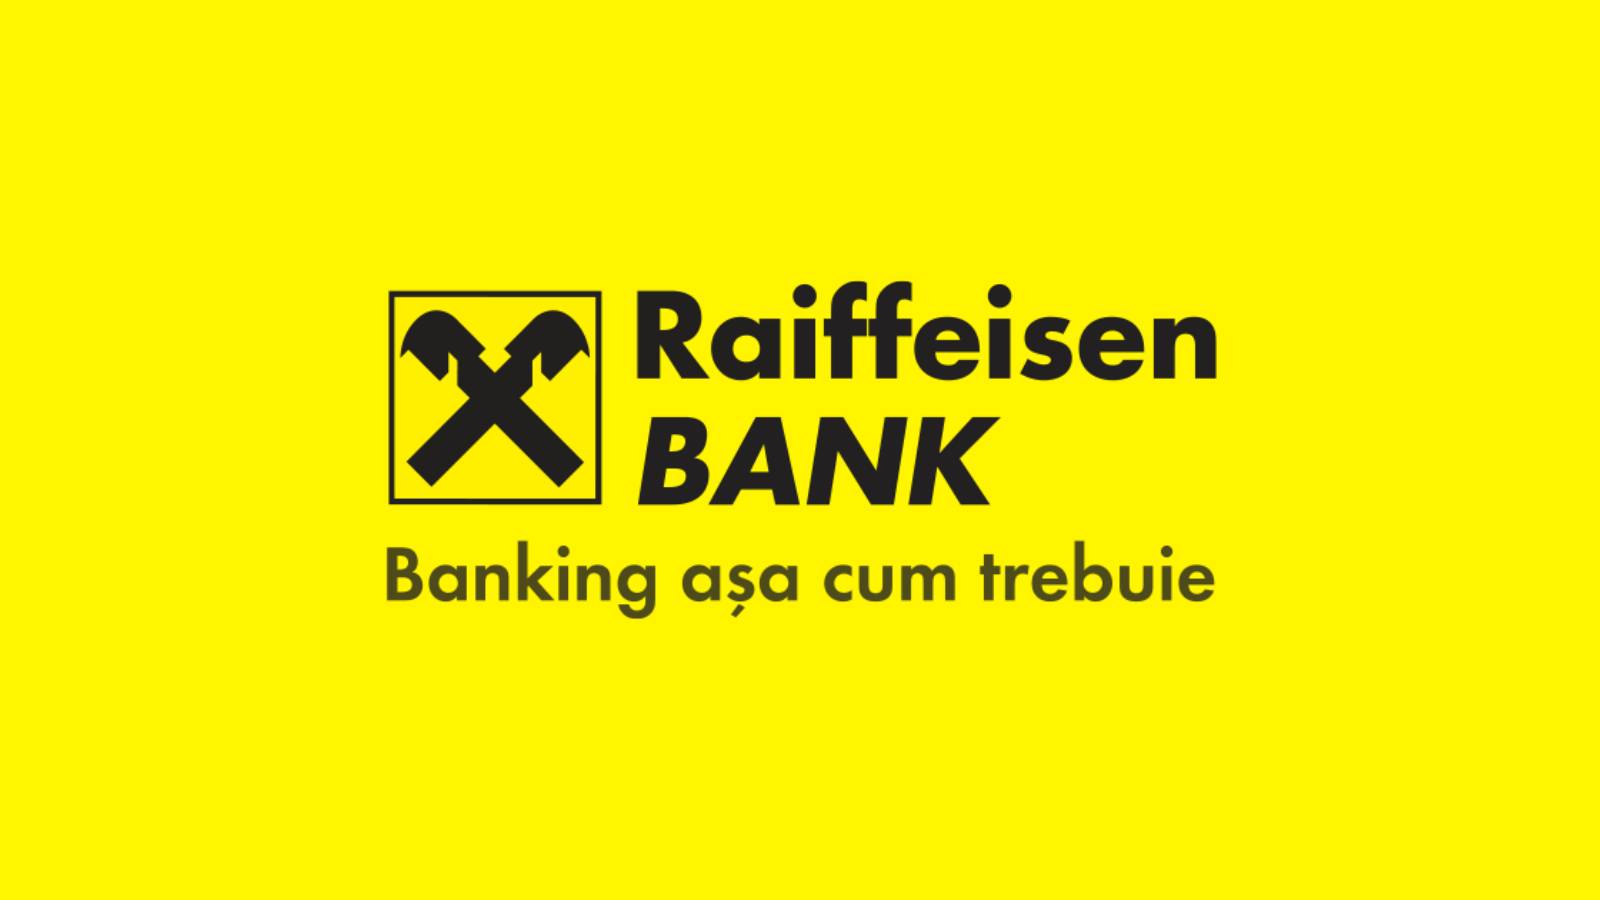 Banque Raiffeisen Informations officielles GRATUITES pour les clients roumains d'aujourd'hui